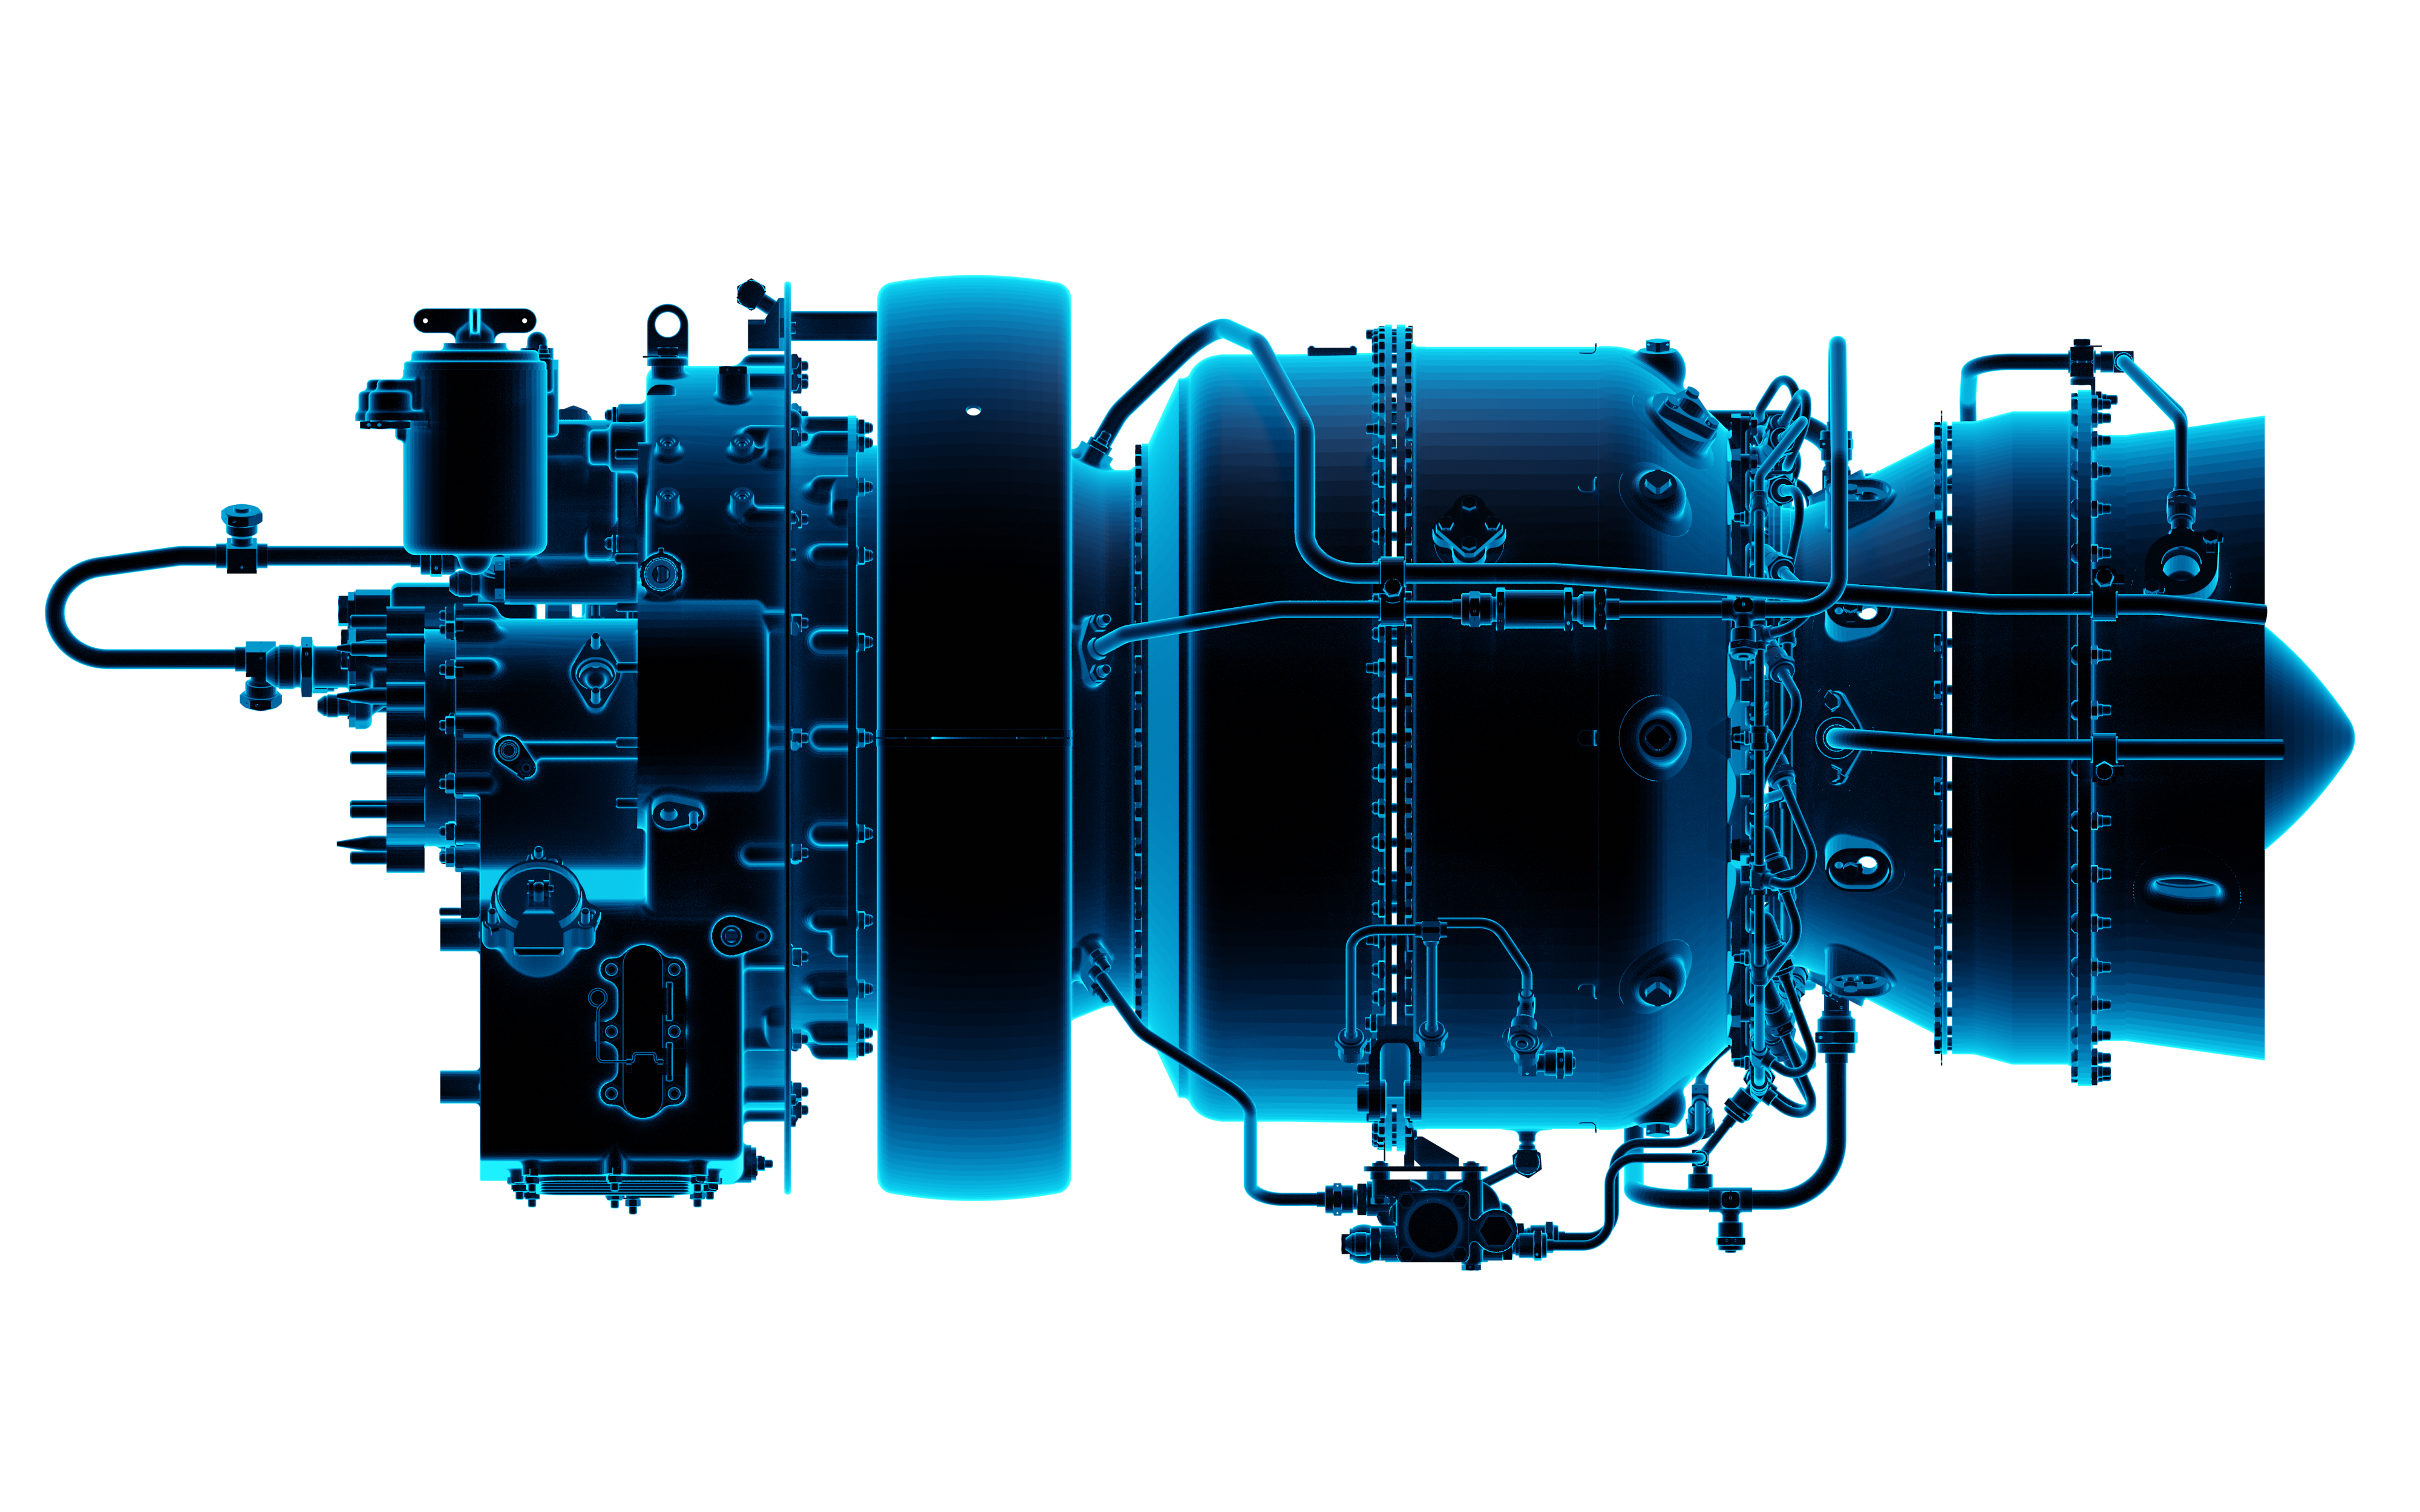 ОДК-Климов презентовал конструктивный облик двигателя ВК-1600В